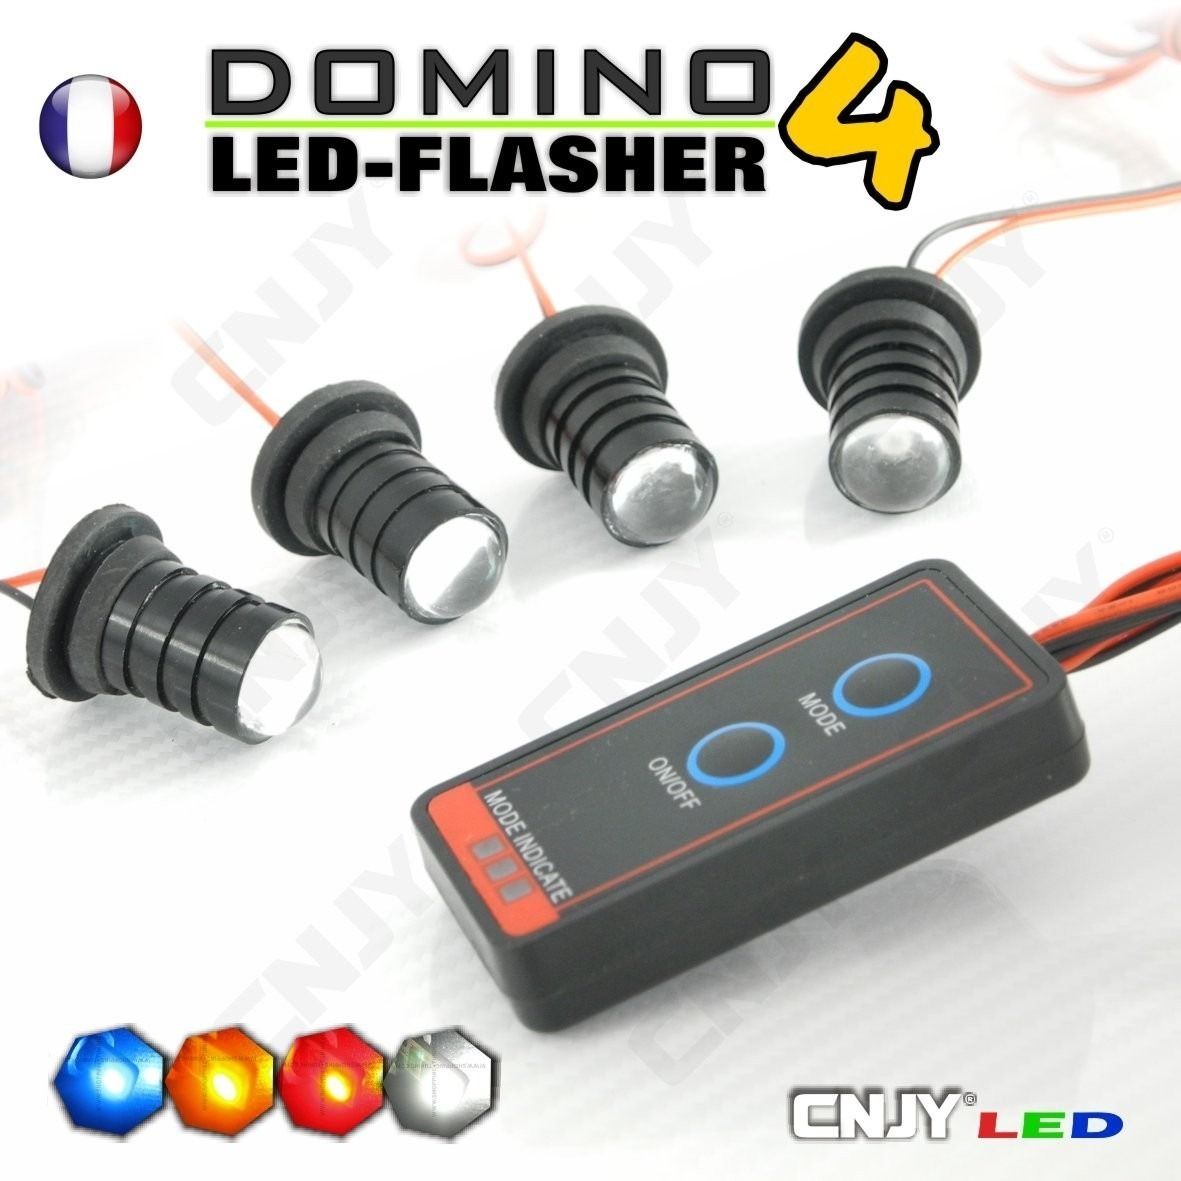 https://www.cnjy-led.fr/56/kit-domino-flasher-4-led-1w-flashing-car-phare-veilleuse-strobo-pace-flash-12v.jpg